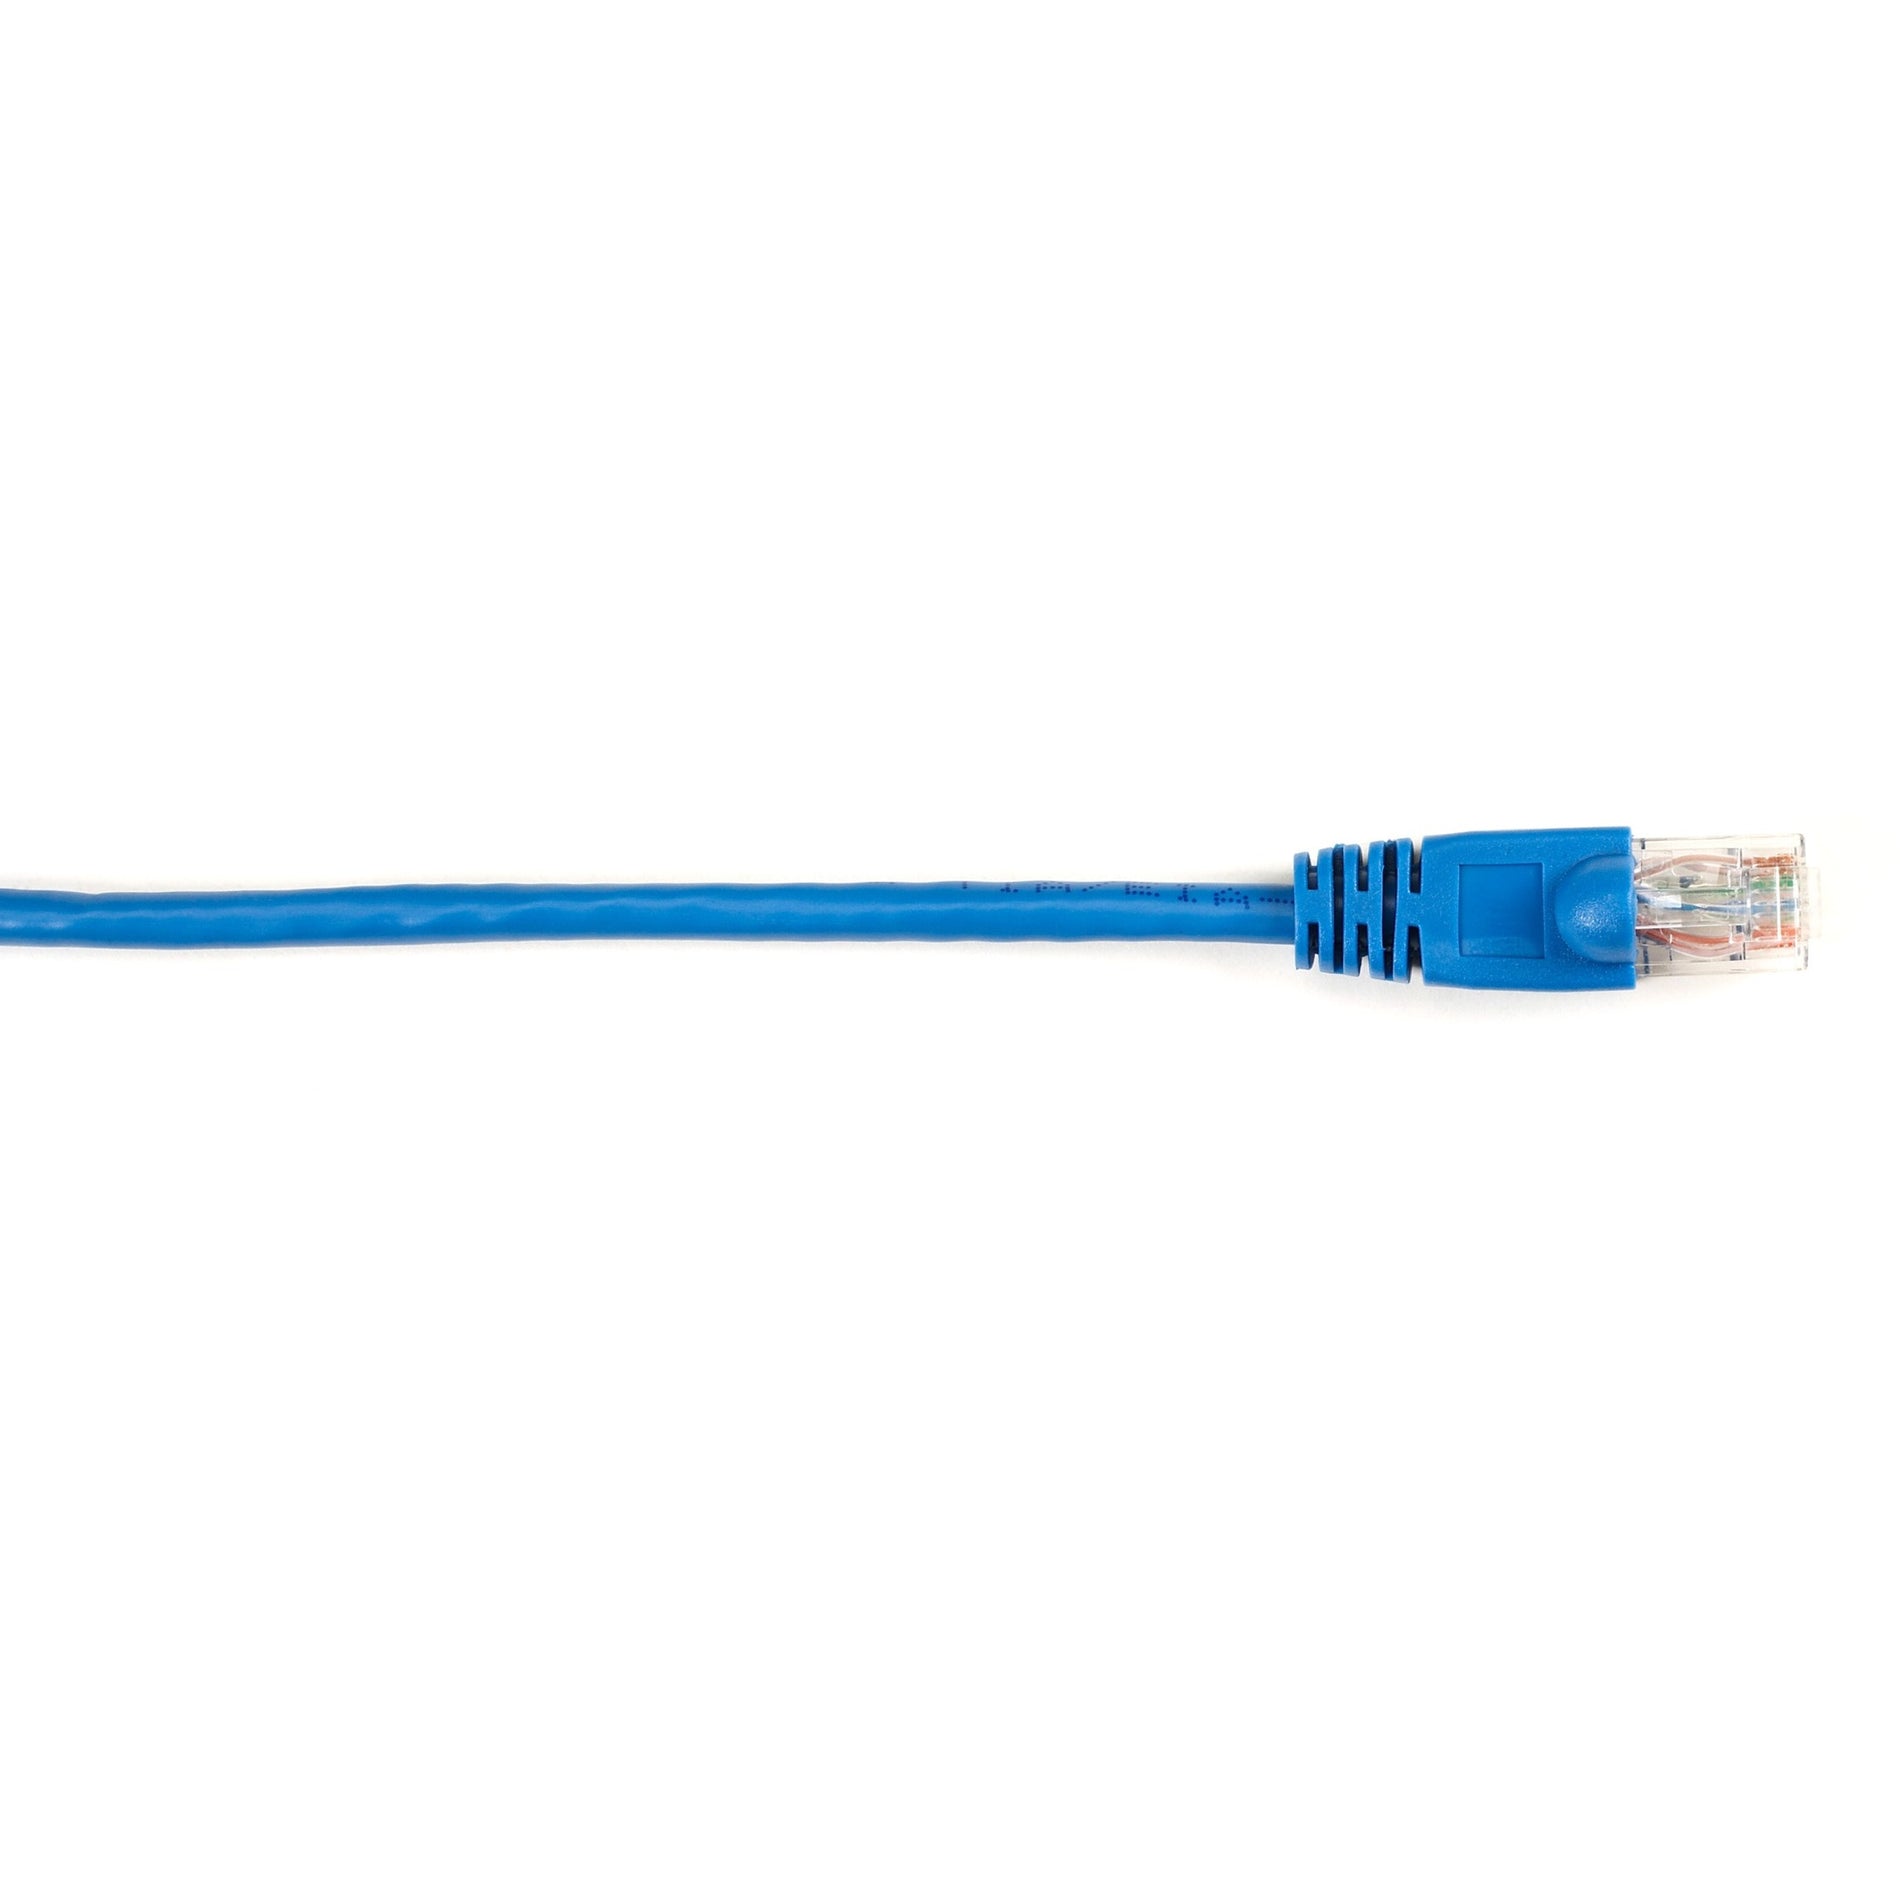 اسم العلامة التجارية: صندوق أسود اللون: أزرق الطول: 10 قدم معدل نقل البيانات: 1 جيجابت / ثانية التوصيل: Cat.6 UTP Patch Network Cable